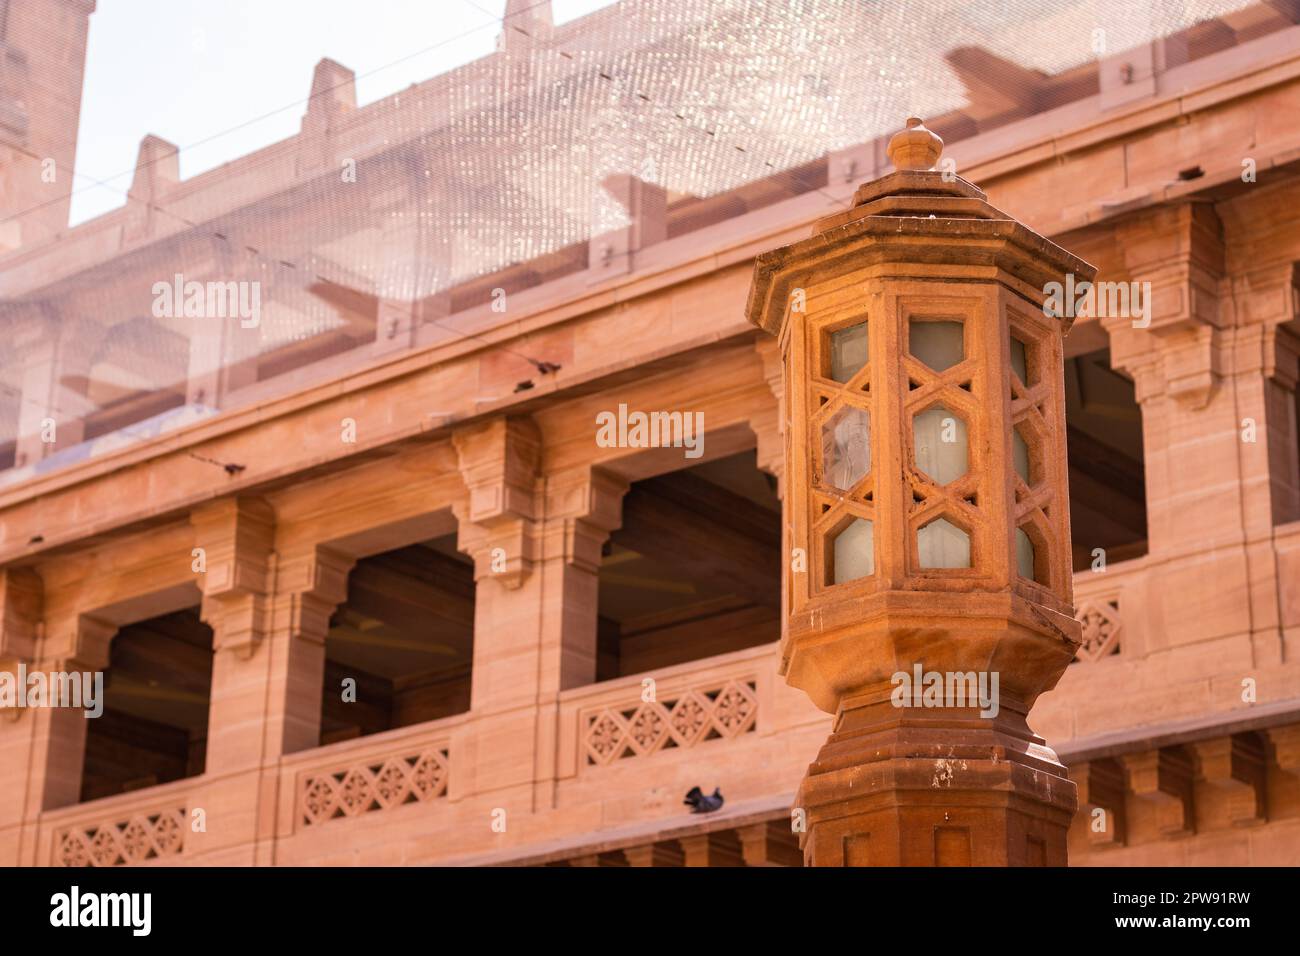 décor artistique lumière faite de pierre rouge le jour à partir de l'image d'angle plat est prise à umaid bhawan palace jodhpur inde. Banque D'Images